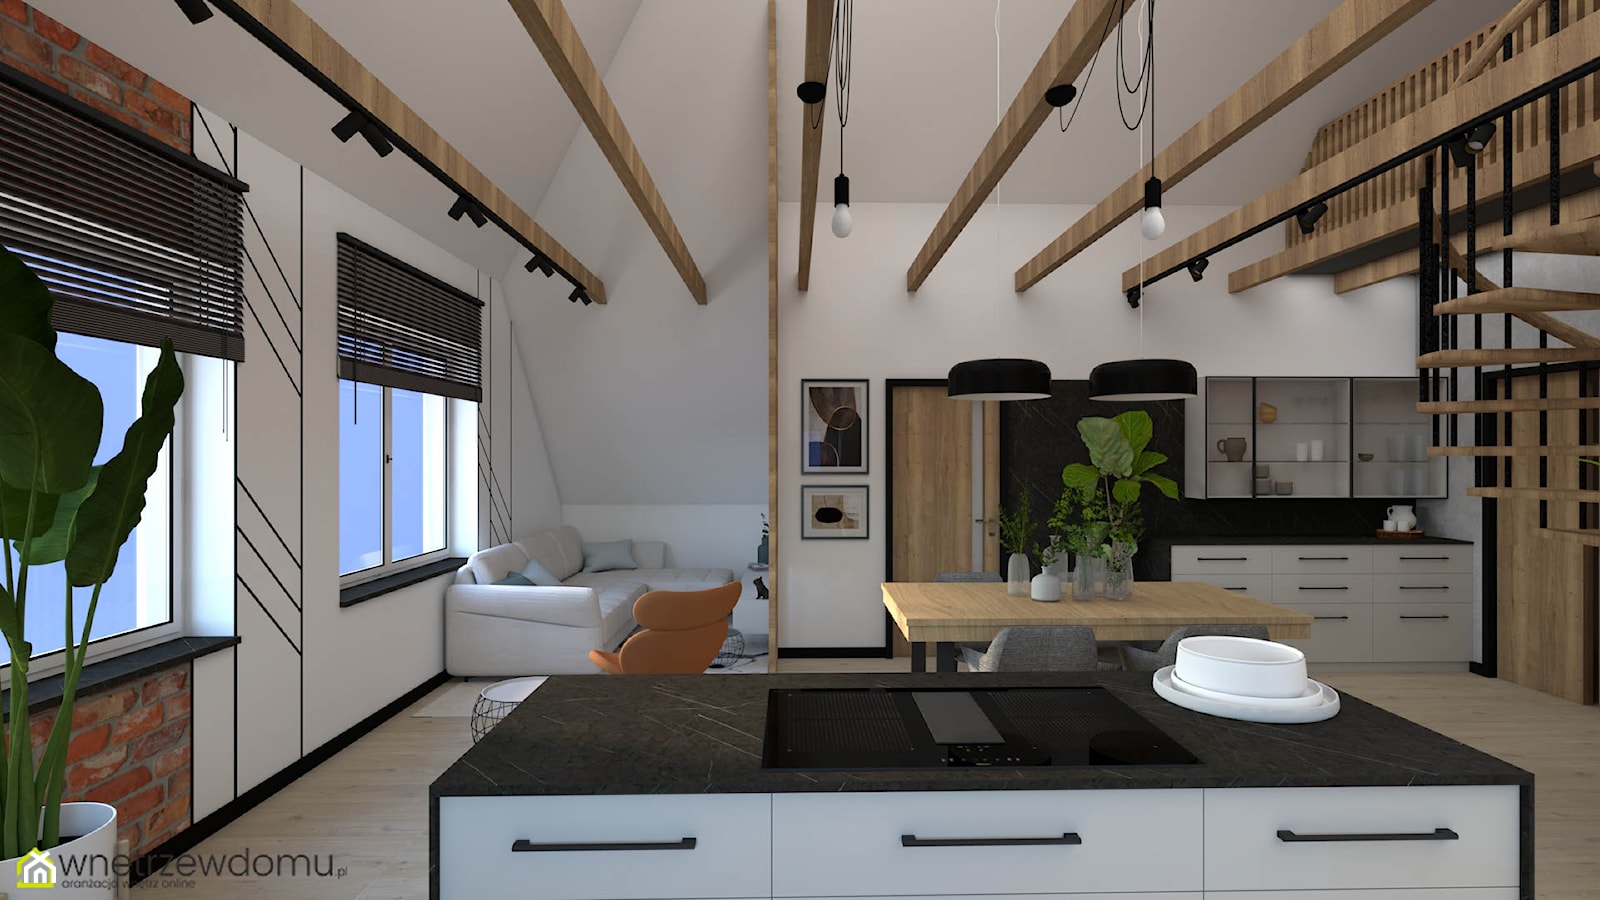 Salon z kuchnią w stylu loftowym na poddaszu - zdjęcie od wnetrzewdomu - Homebook